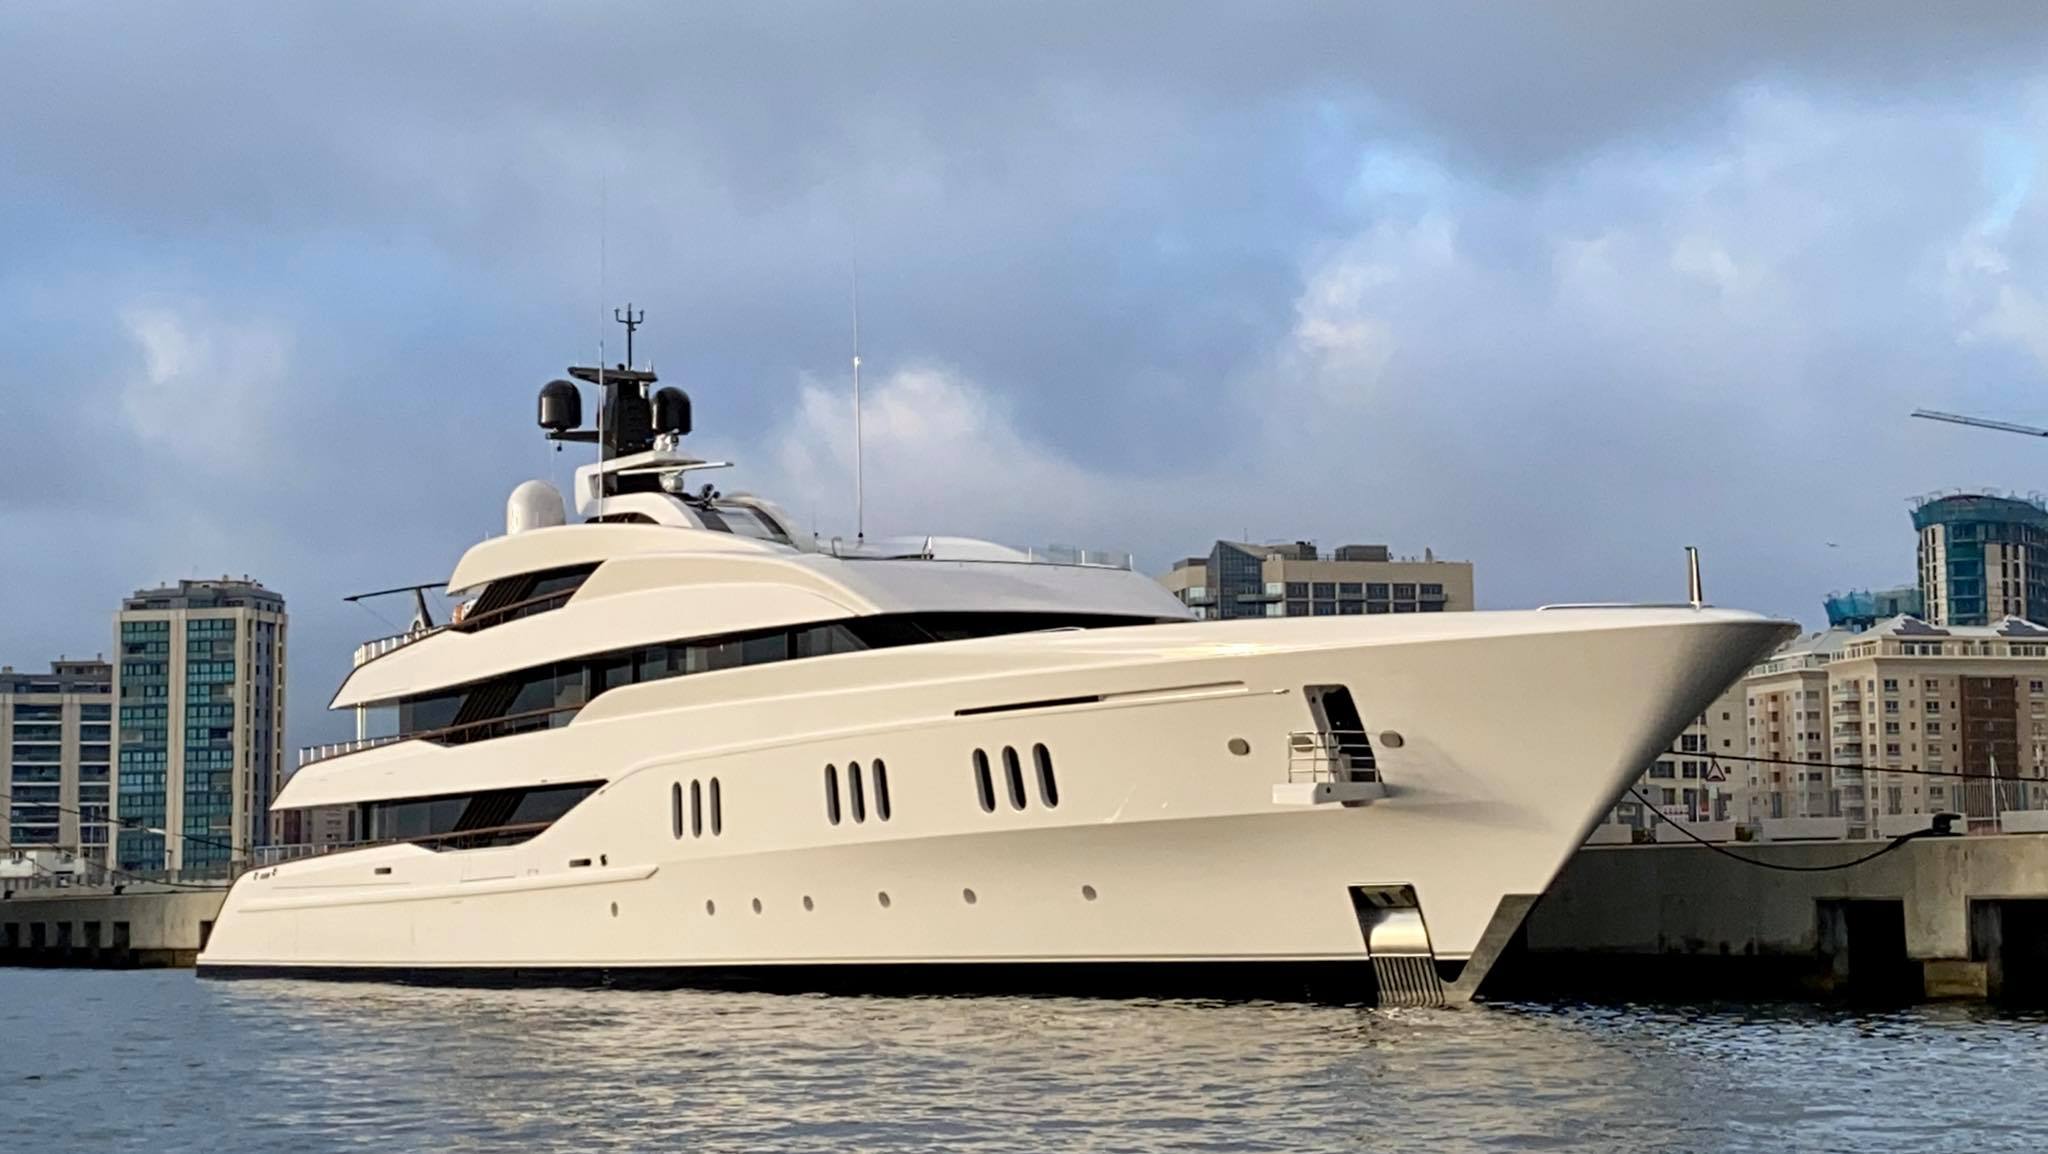 Vanish yacht – Feadship – 2021 – owner Larry Van Tuyl